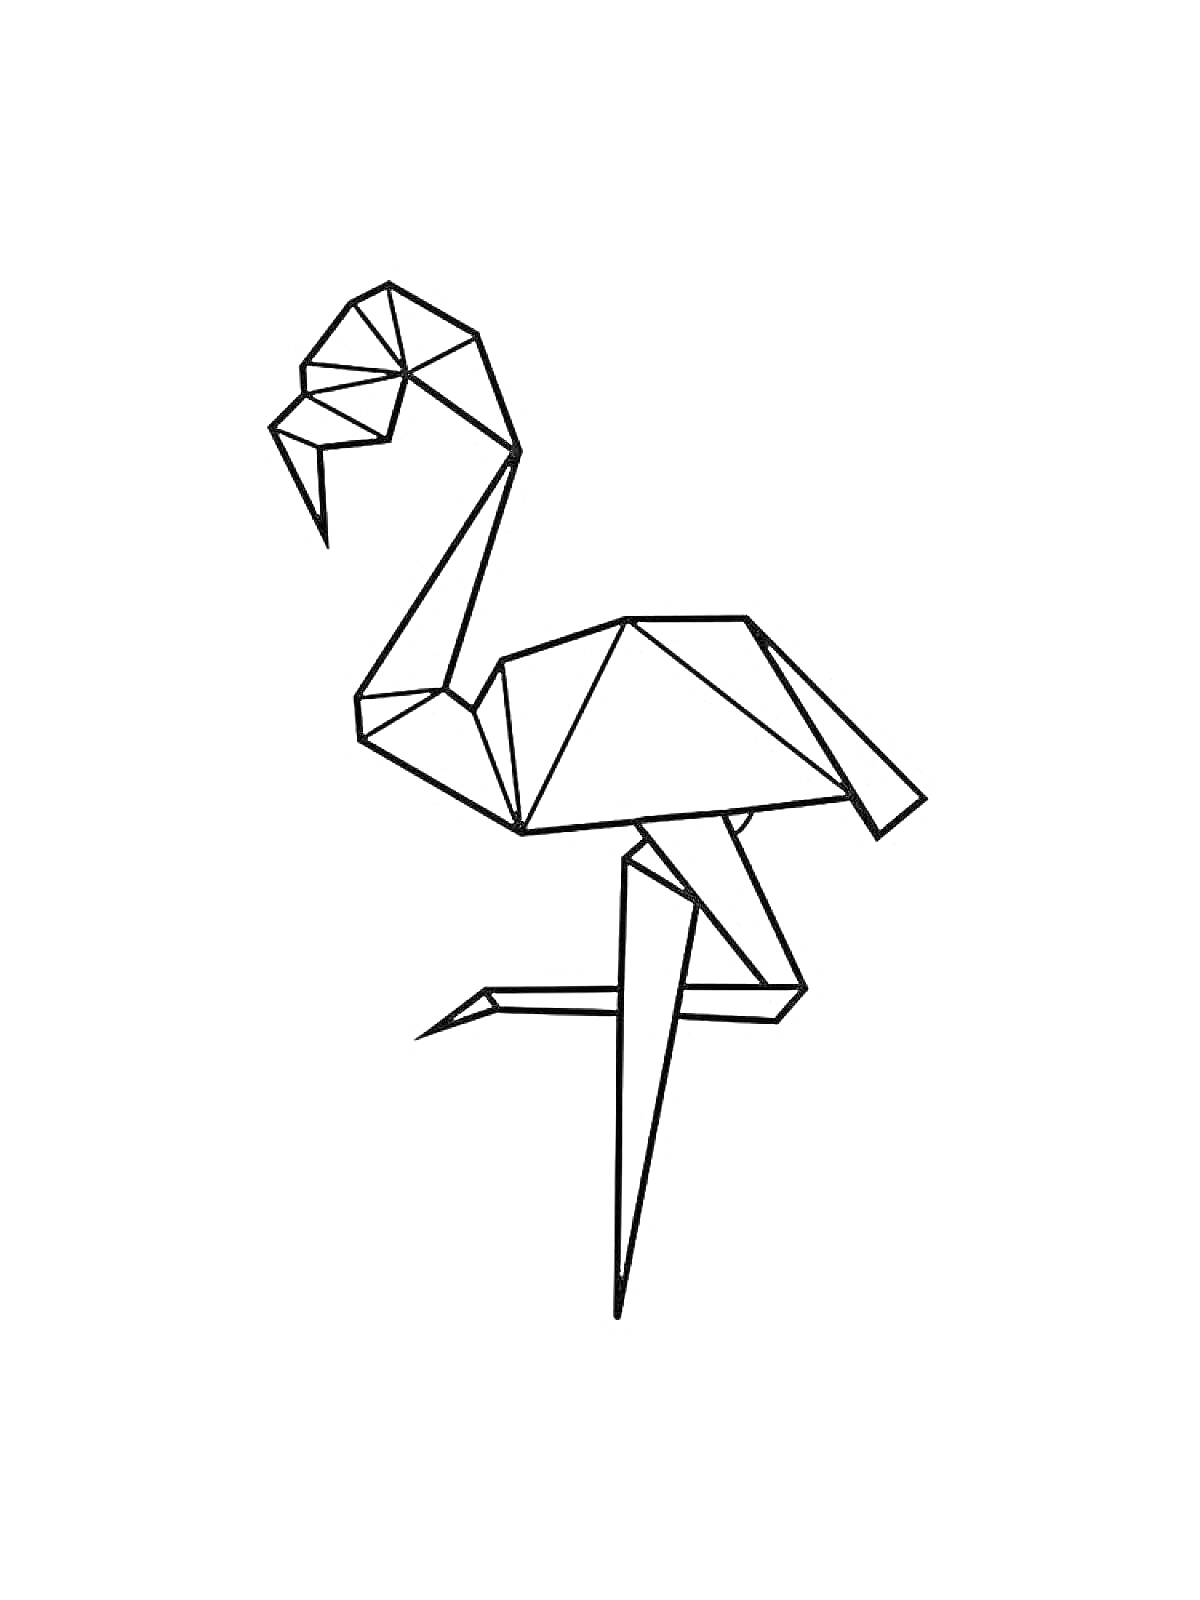 Раскраска Оригами фламинго в стойке на одной ноге